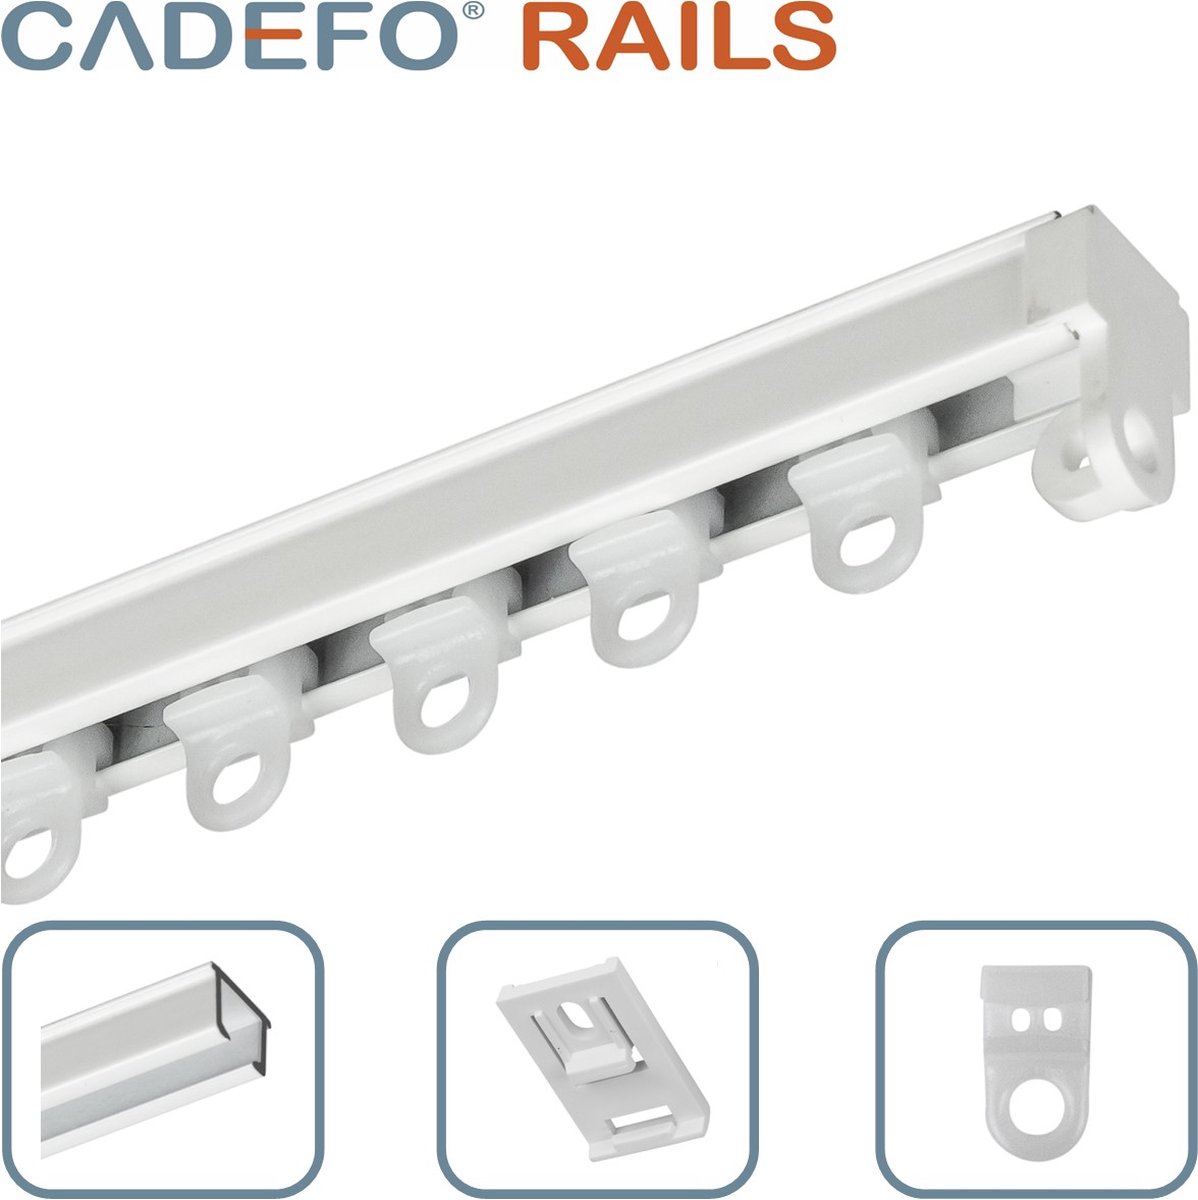 CADEFO RAILS (401 - 450 cm) Gordijnrails - Compleet op maat! - UIT 1 STUK - Leverbaar tot 6 meter - Plafondbevestiging - Lengte 415 cm